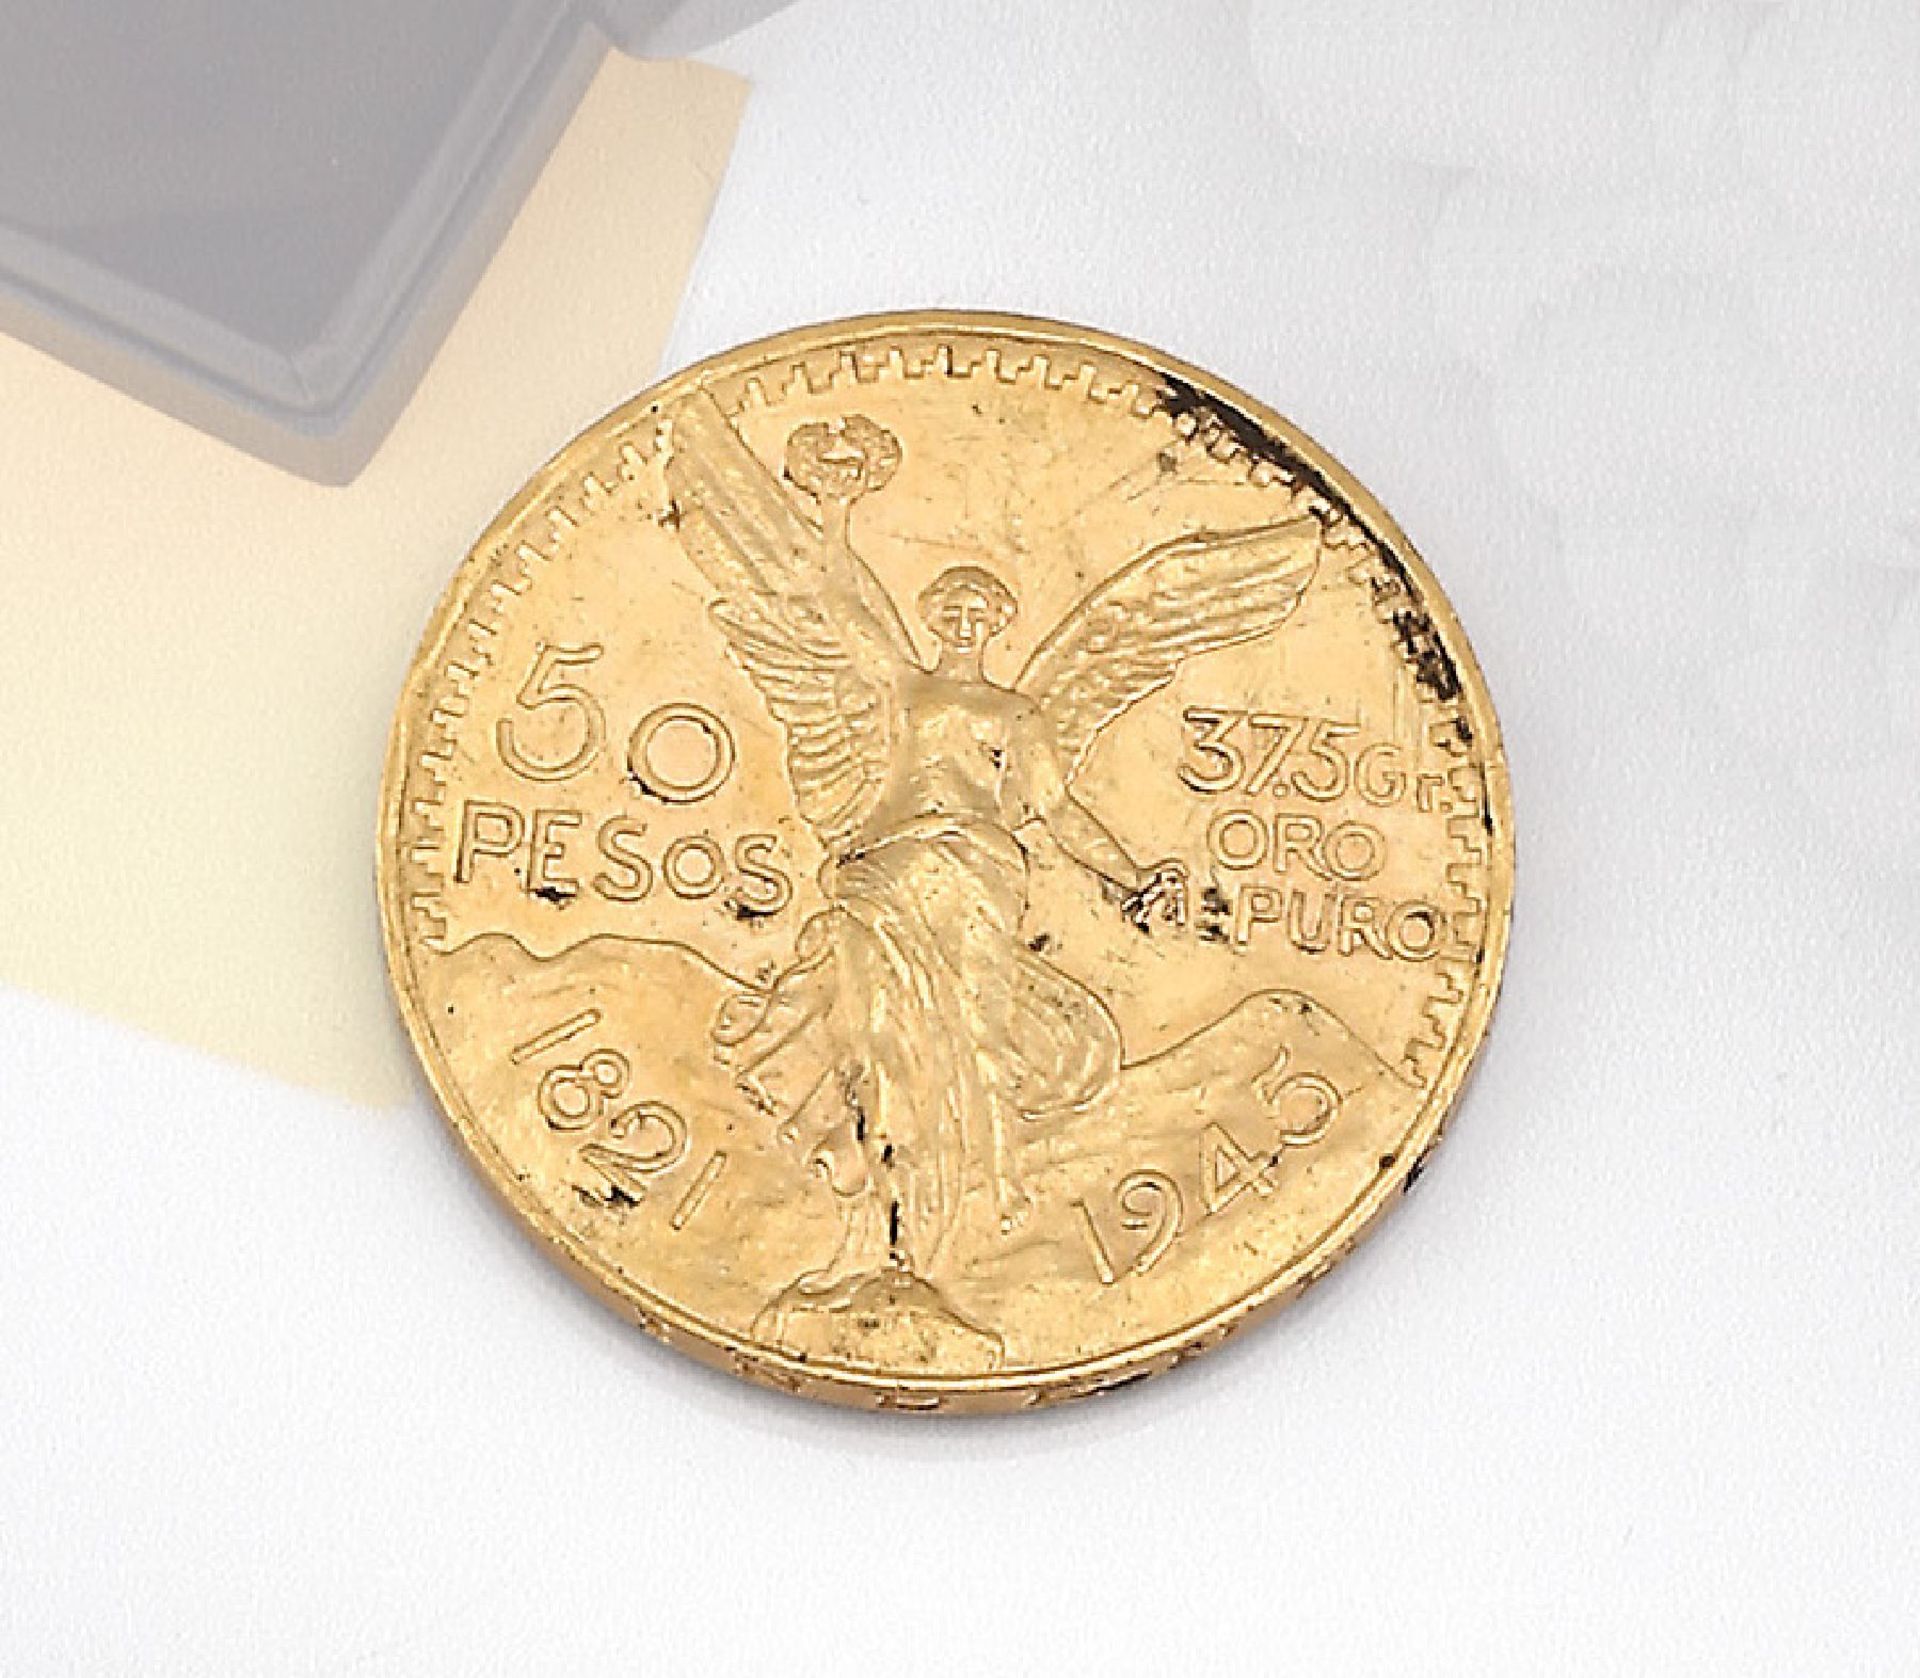 Goldmünze, 50 Pesos, Mexiko, 1945, Estados unidos mexicanos, 37.5 gr oro puroGold coin, 50 Pesos,